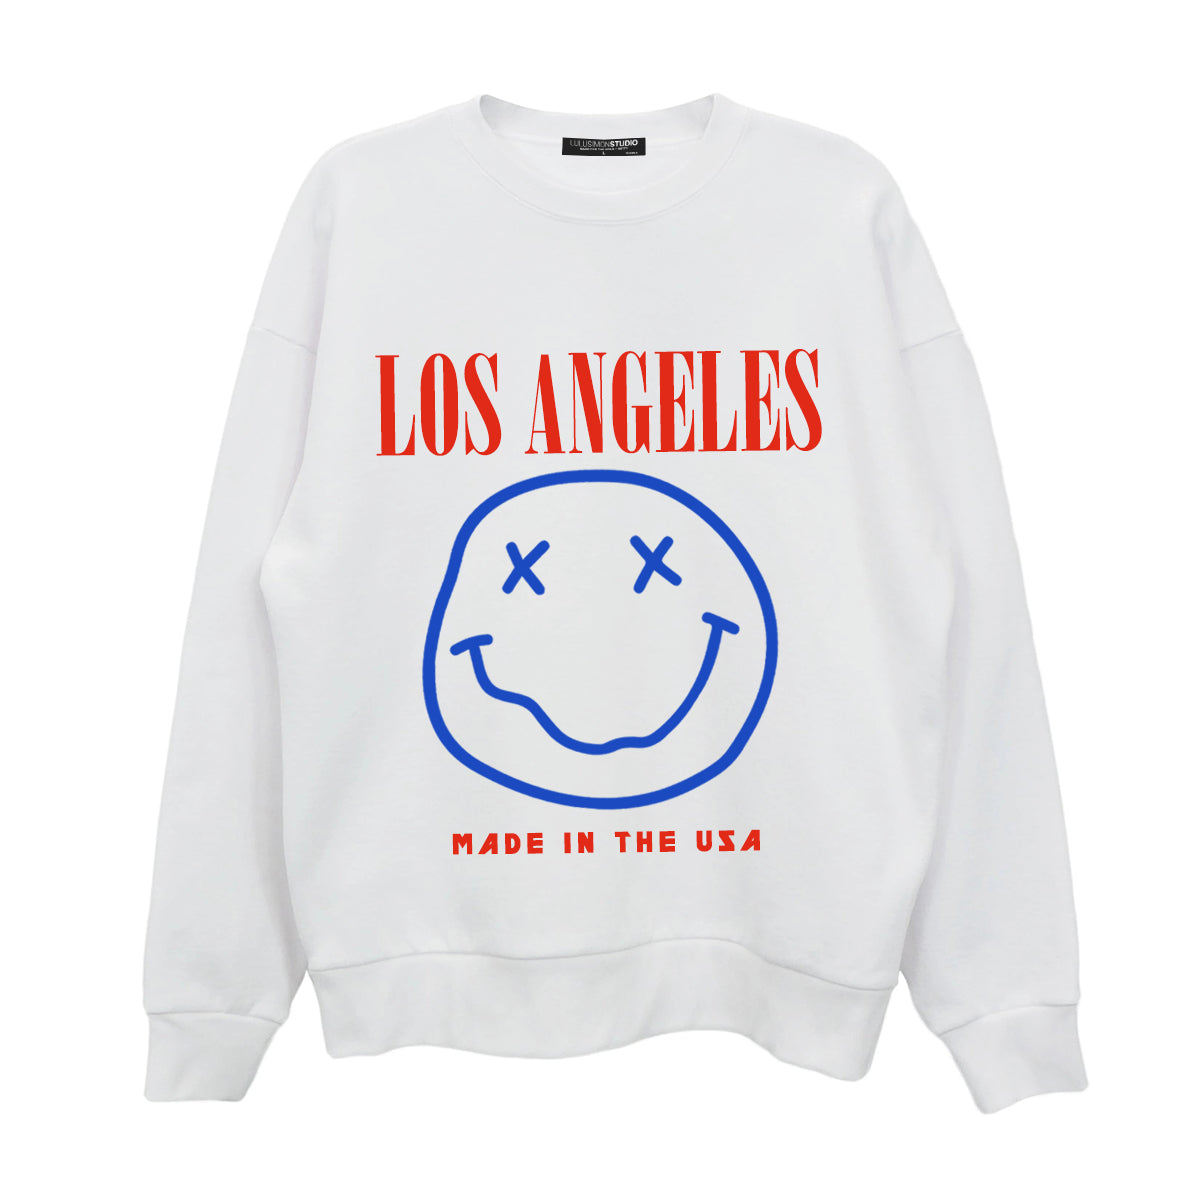 Los Angeles Smiley Sweatshirt